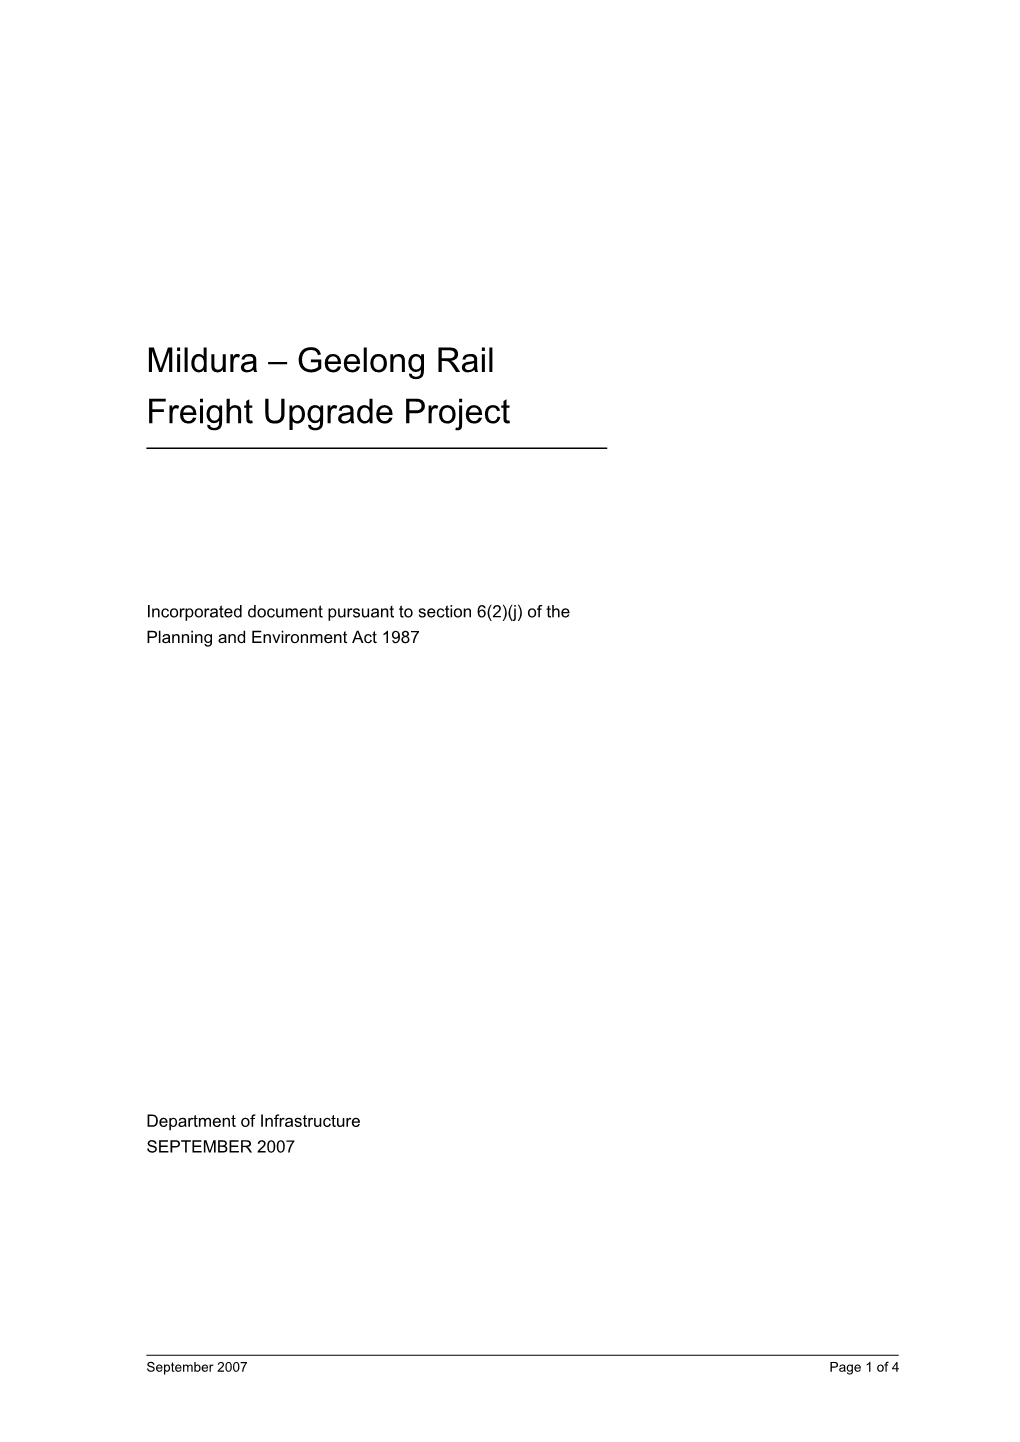 Mildura – Geelong Rail Freight Upgrade Project